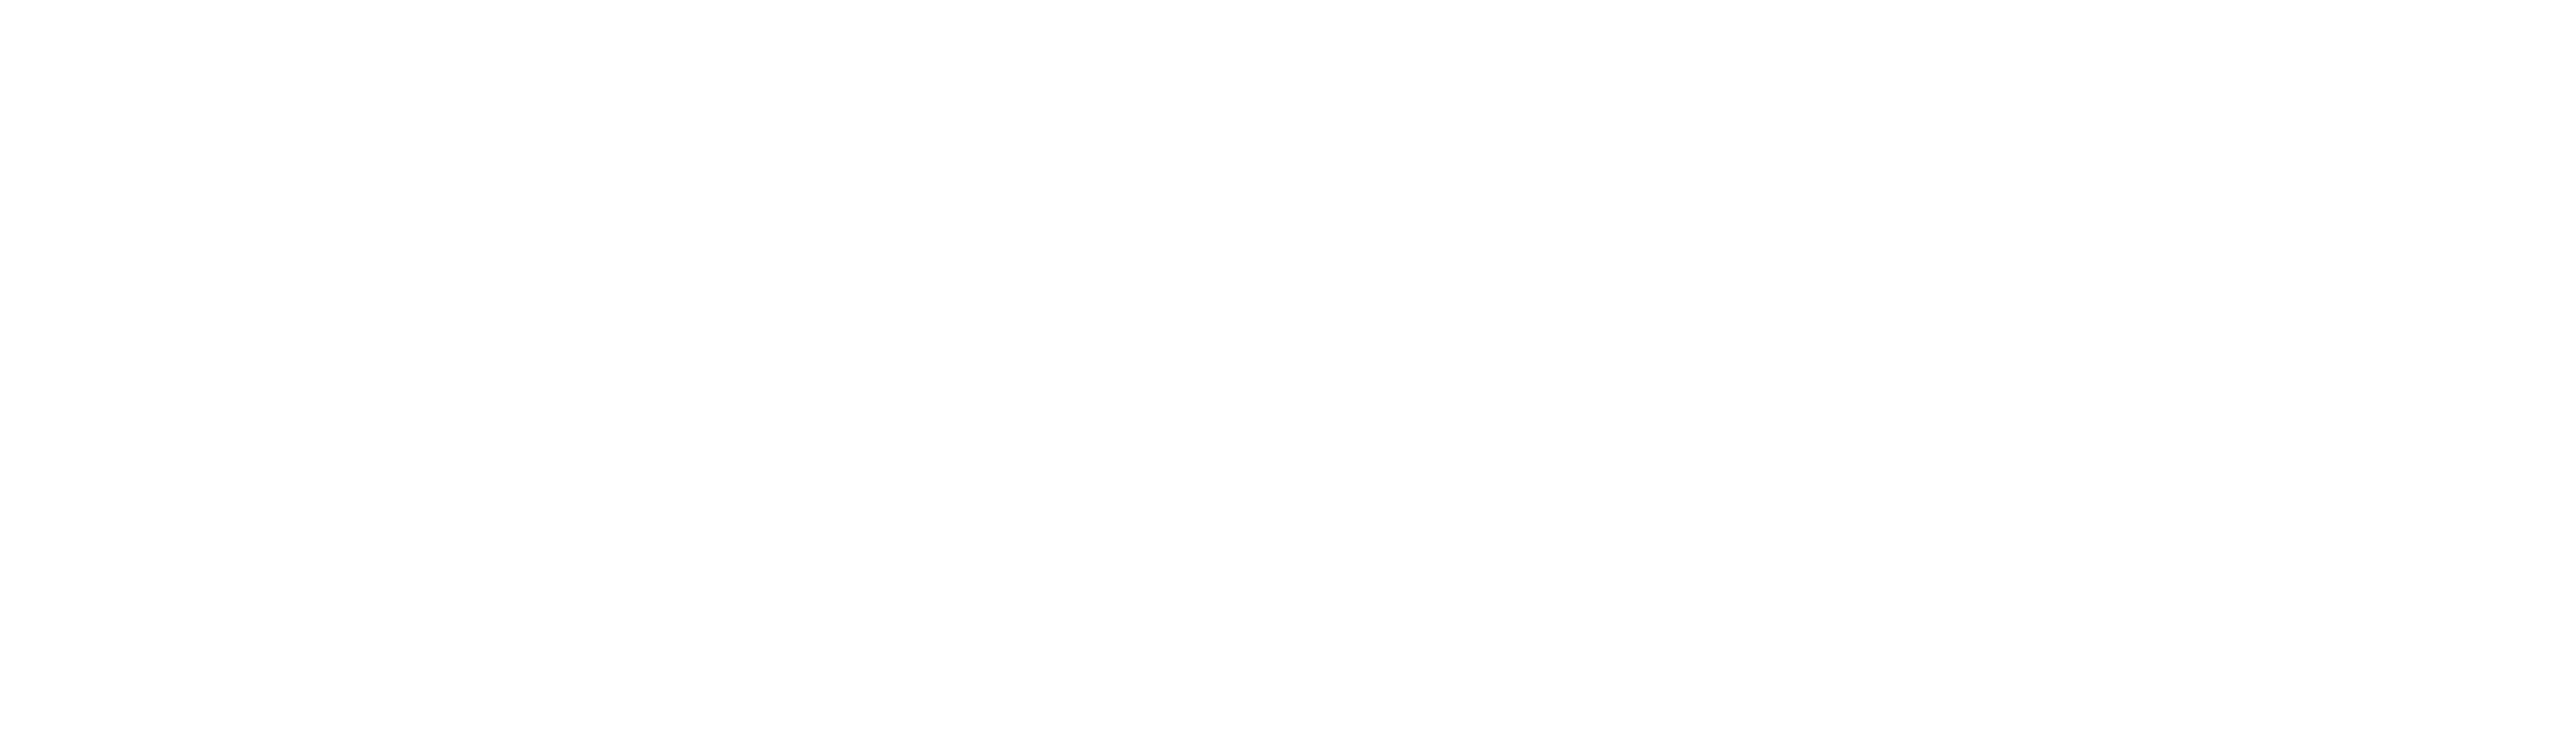 carmines rosemont logo whiteall